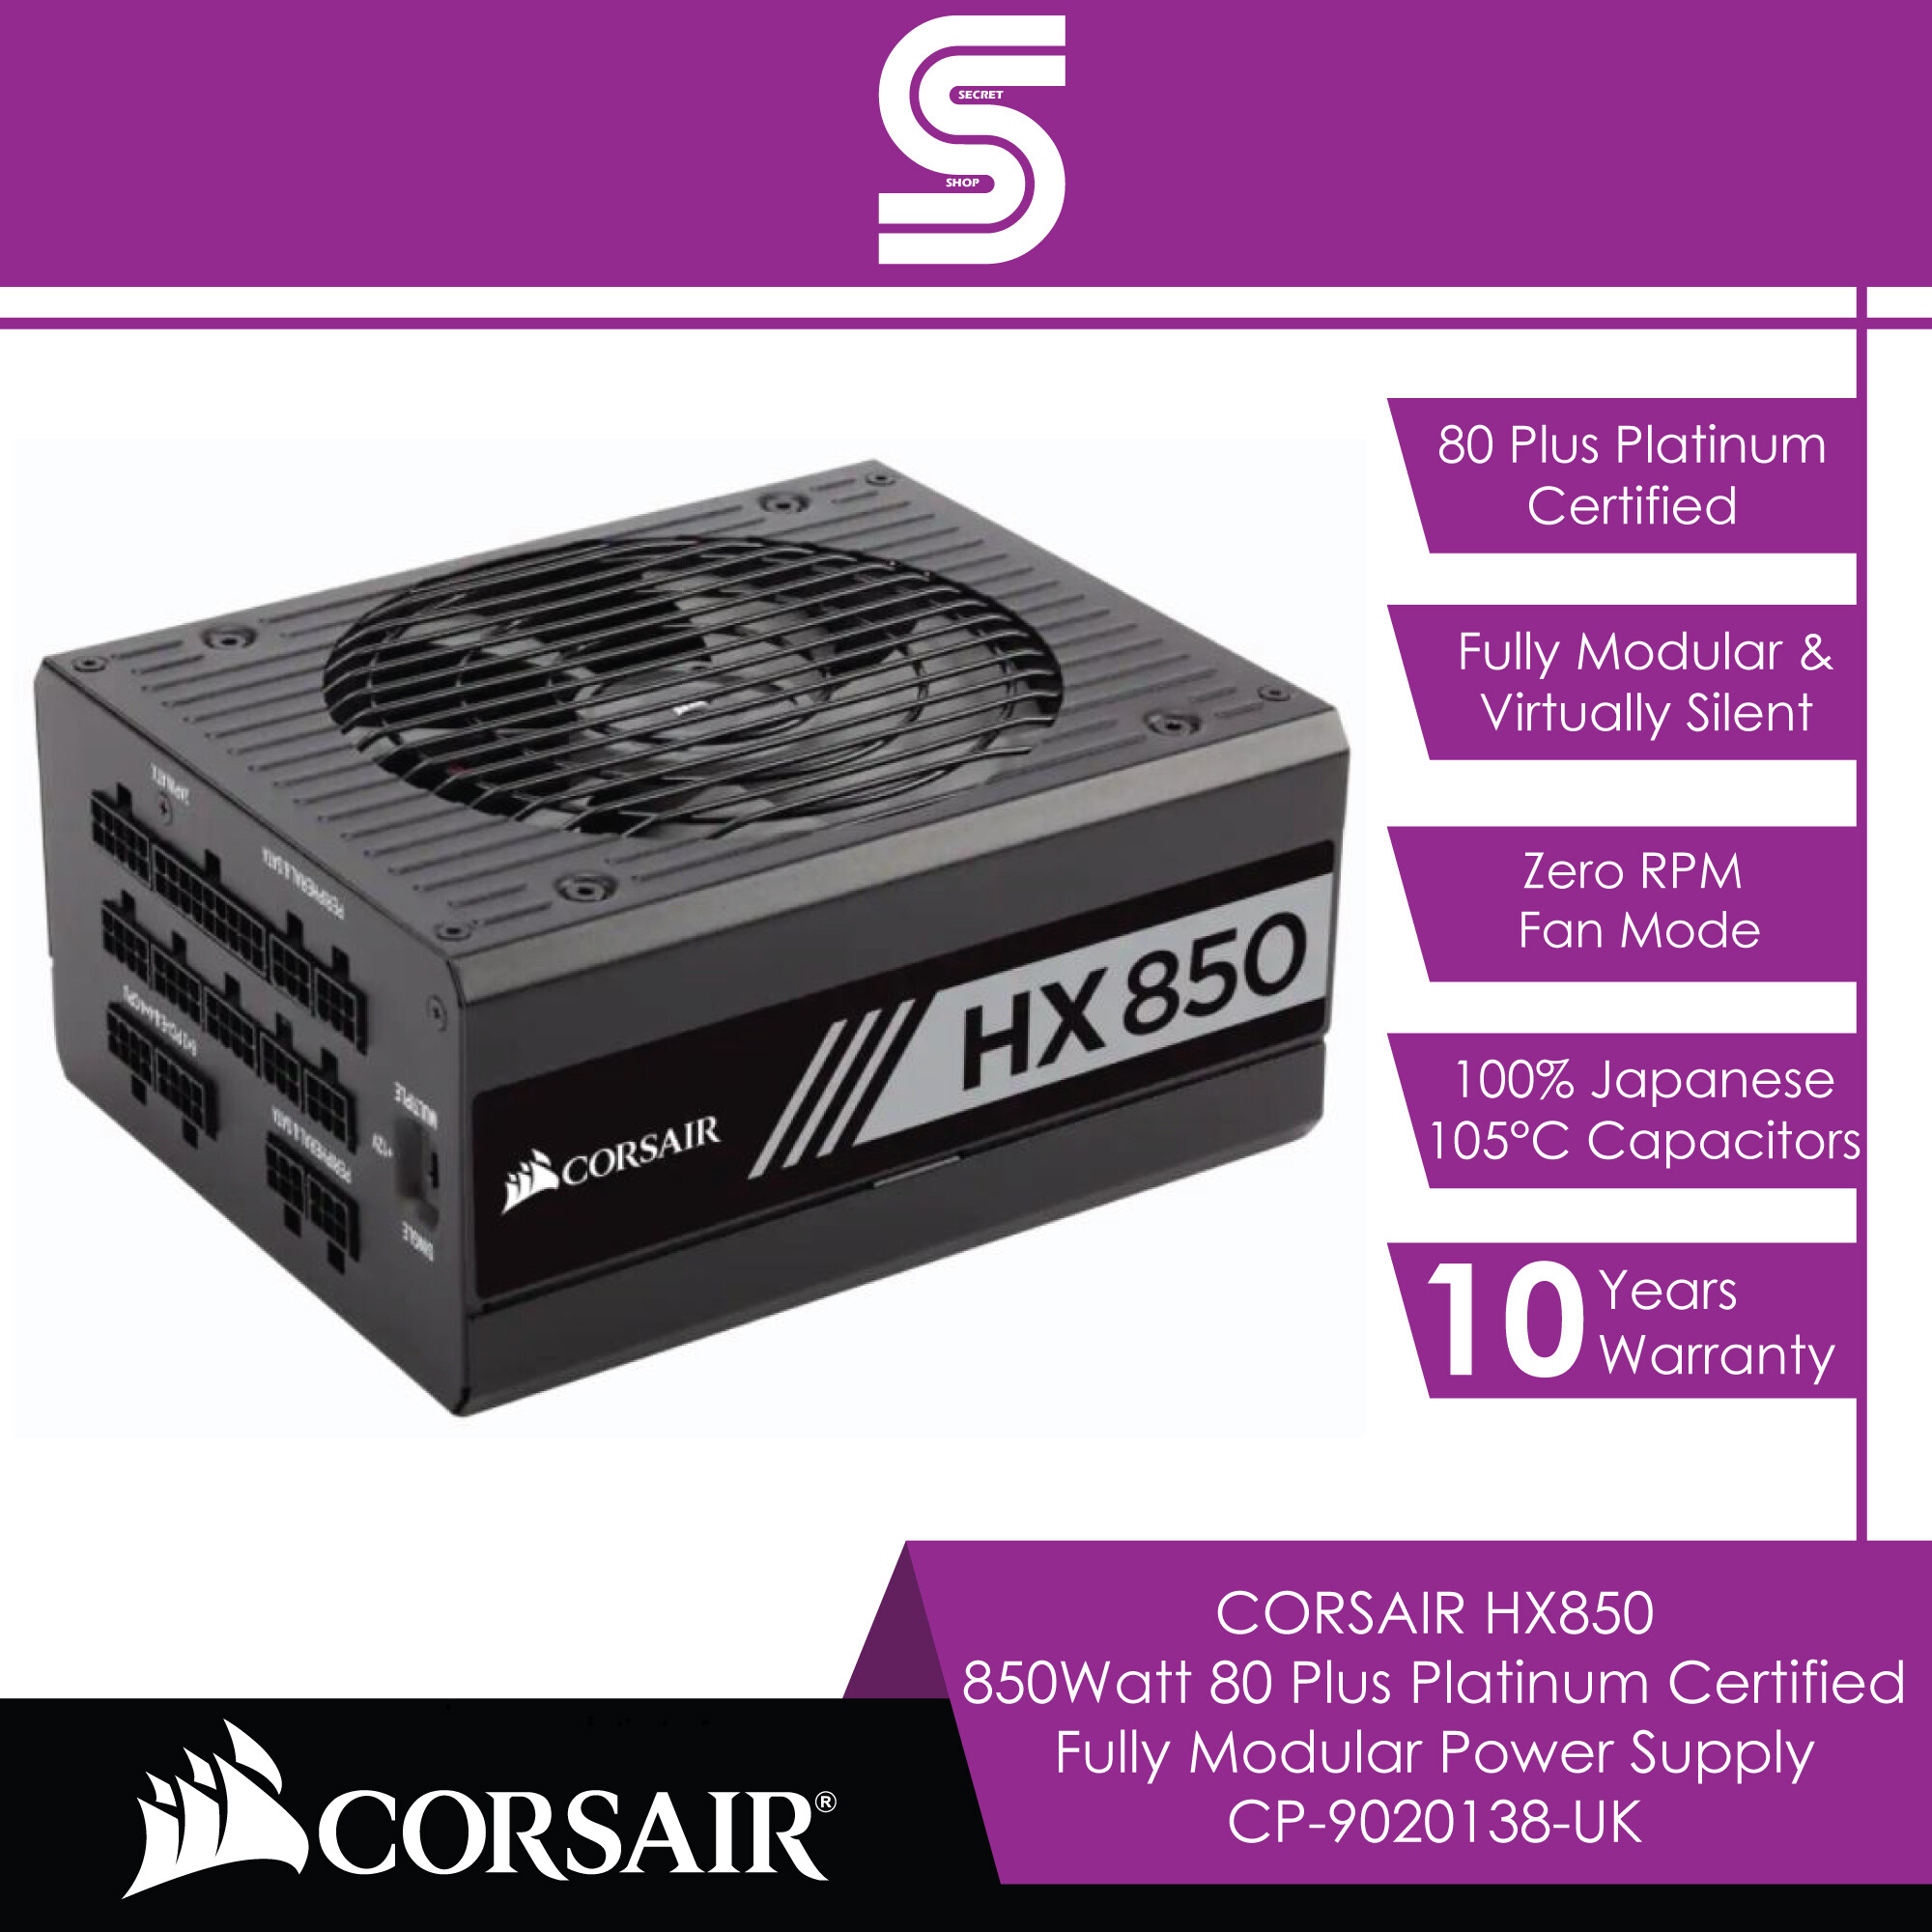 CORSAIR HX850 850Watt 80 Plus Platinum Certified Fully Modular Power Supply - CP-9020138-UK